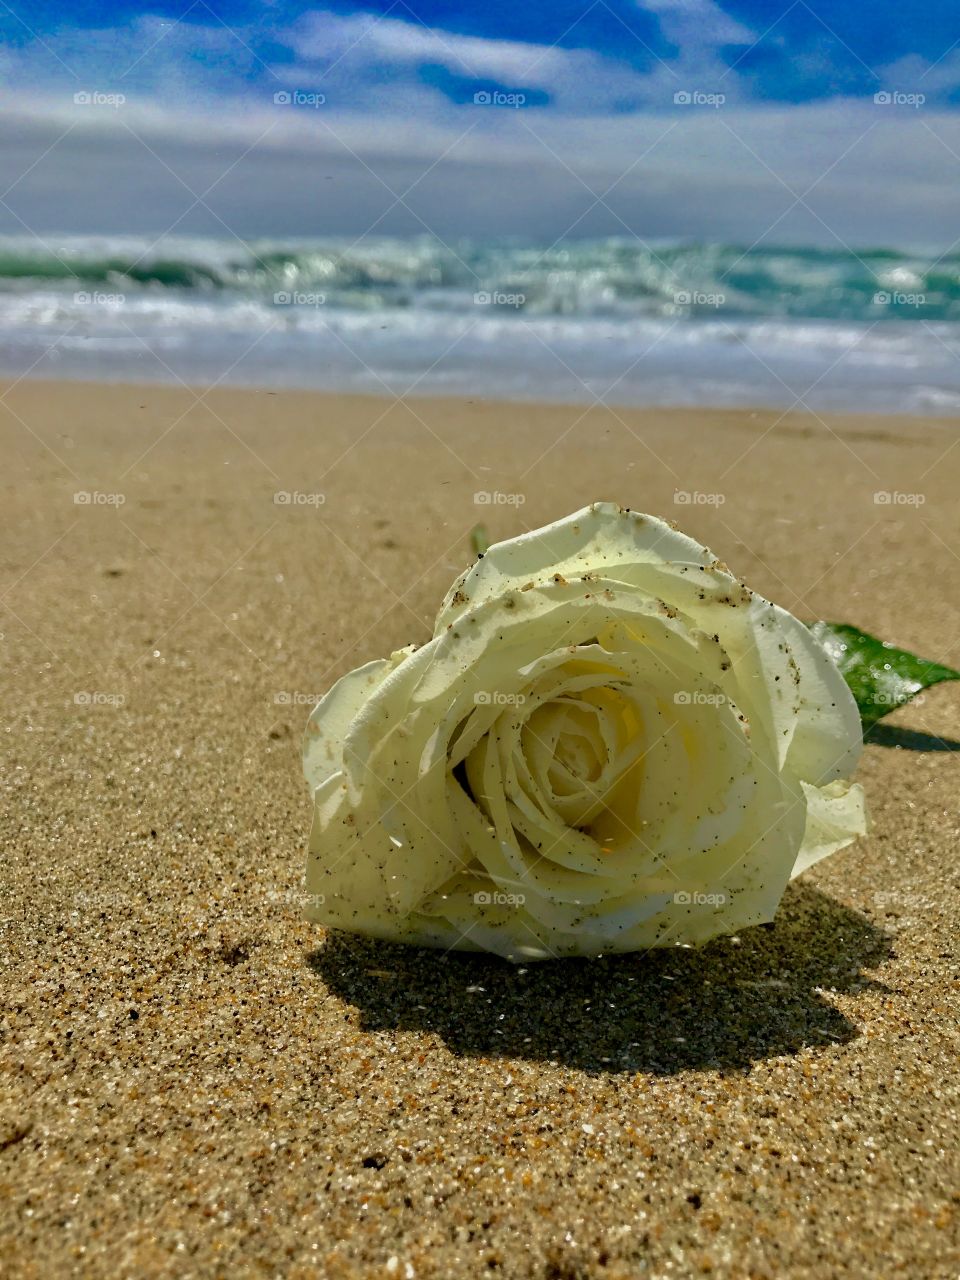 A white rose on a California beach. 